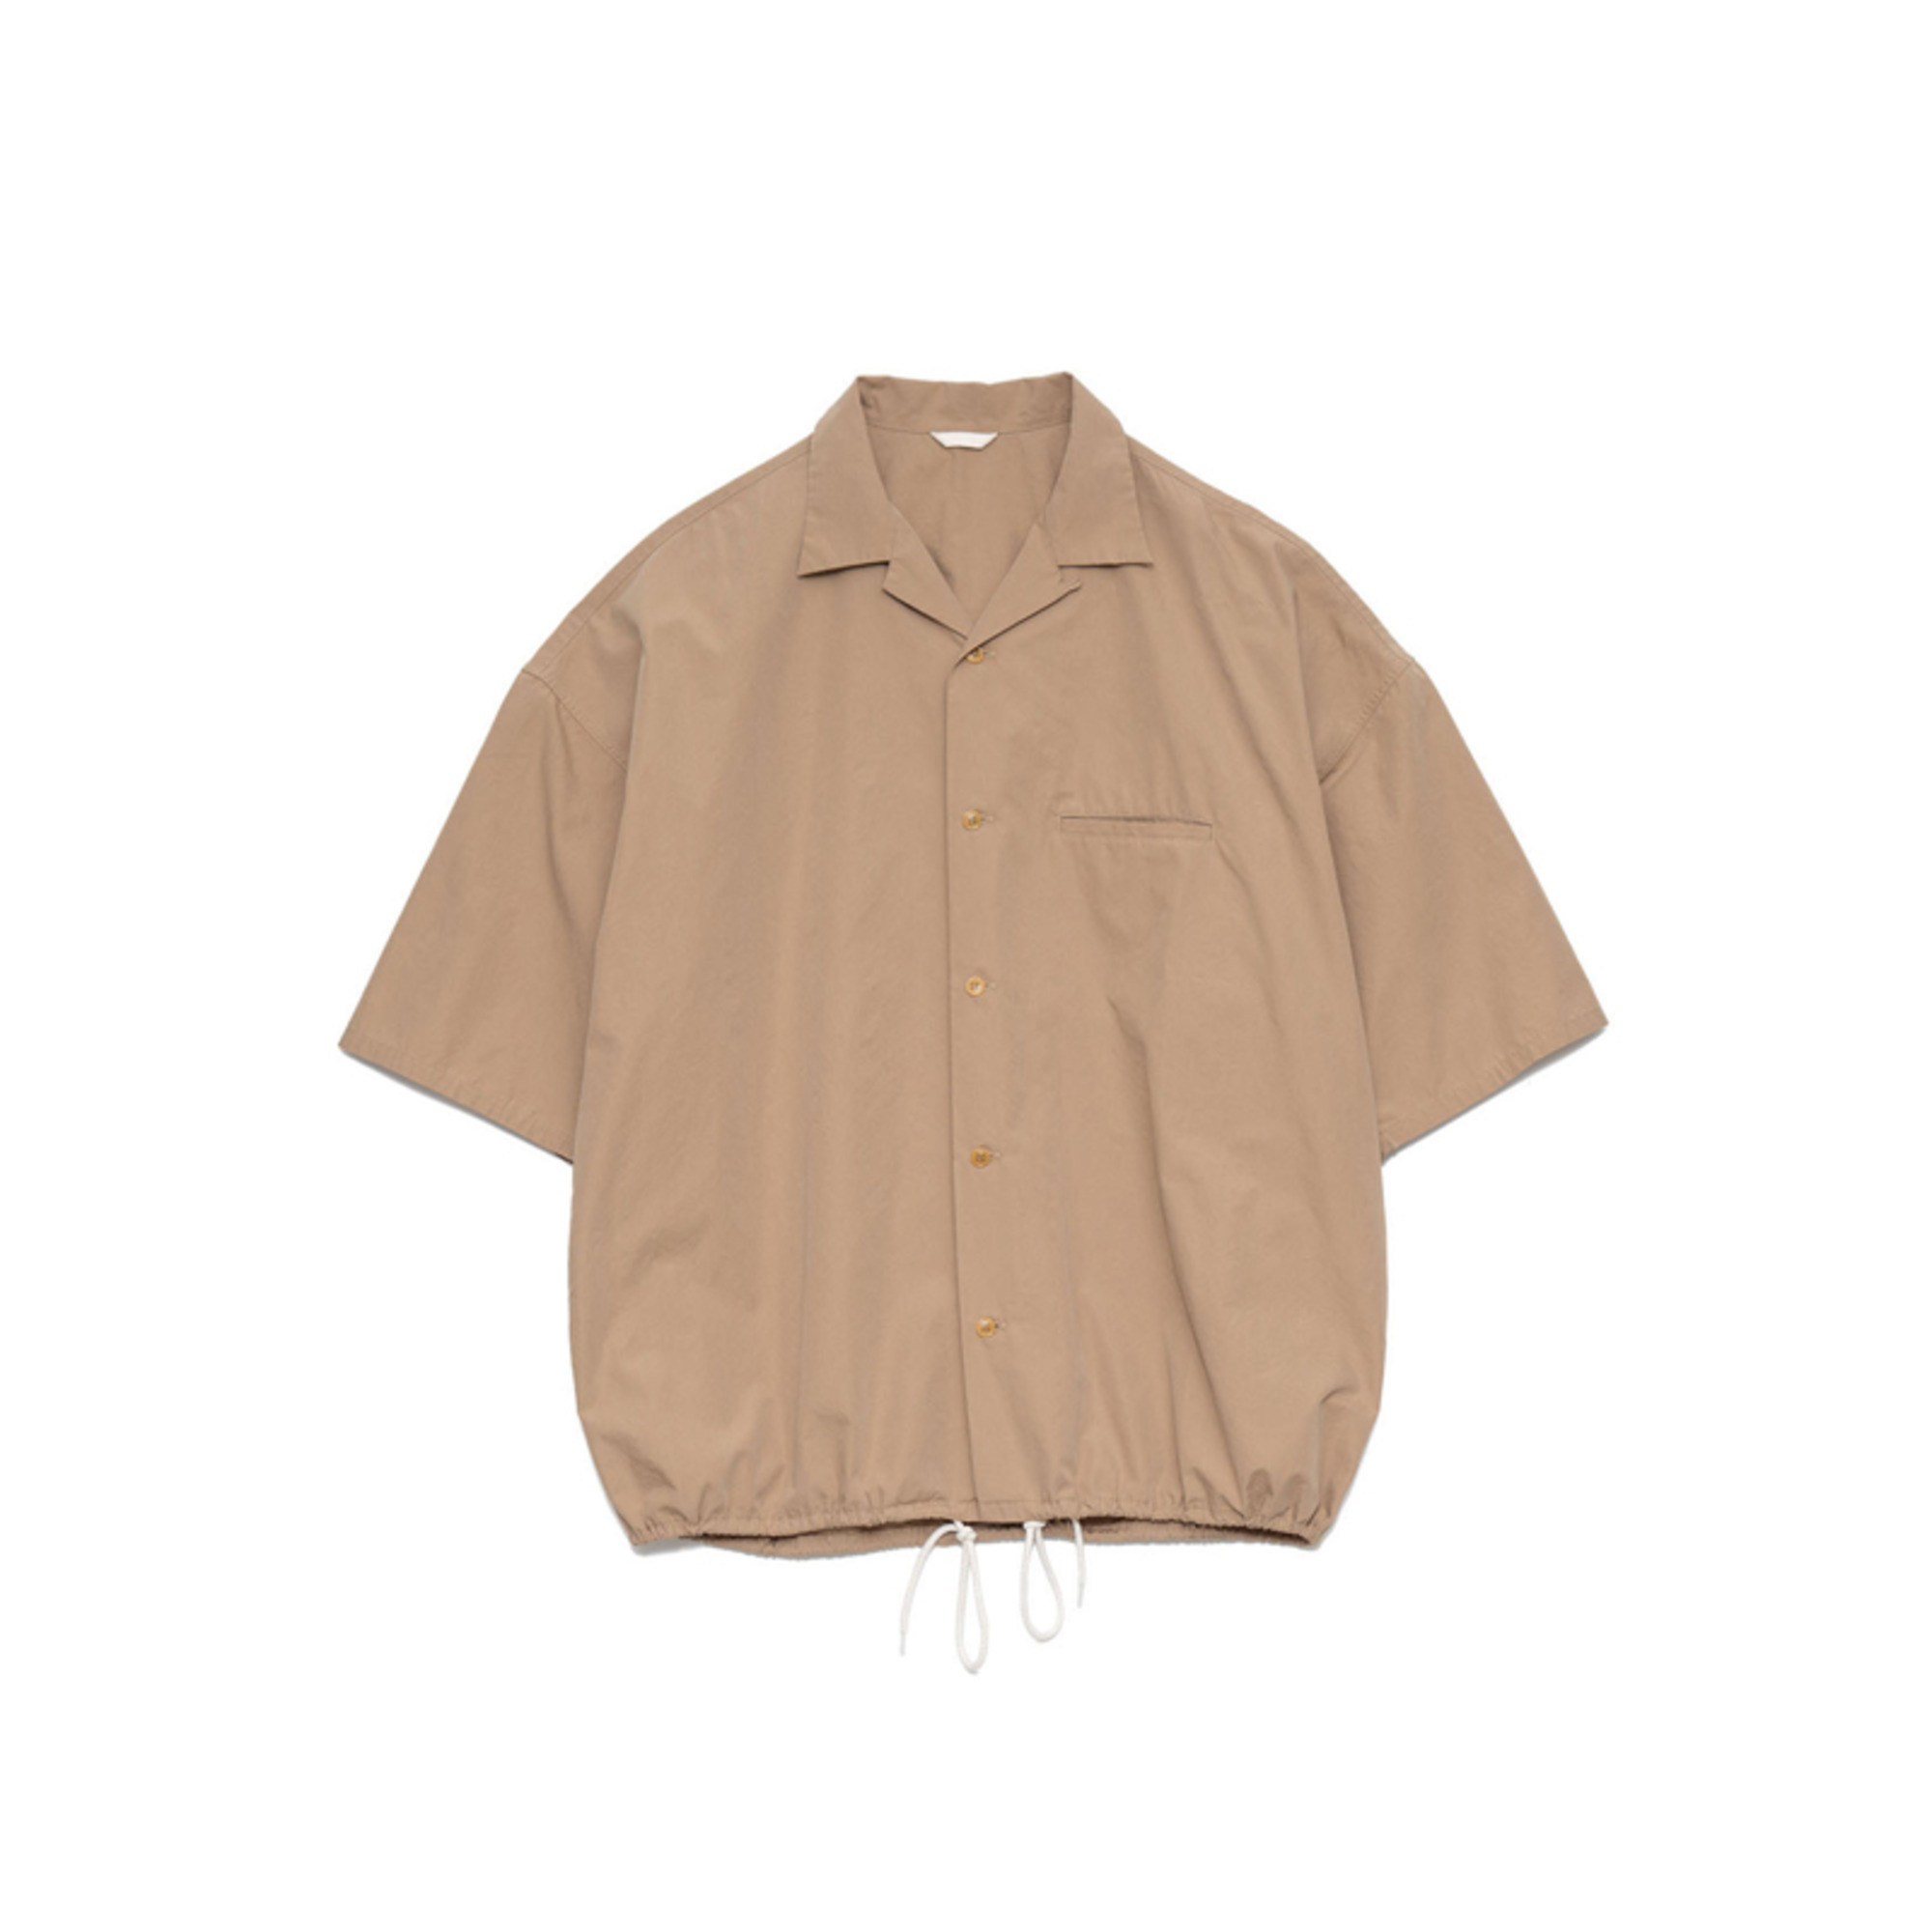 自产 X nanamica 23SS Wind Shirt复古日潮简约廓形宽松短袖衬衫